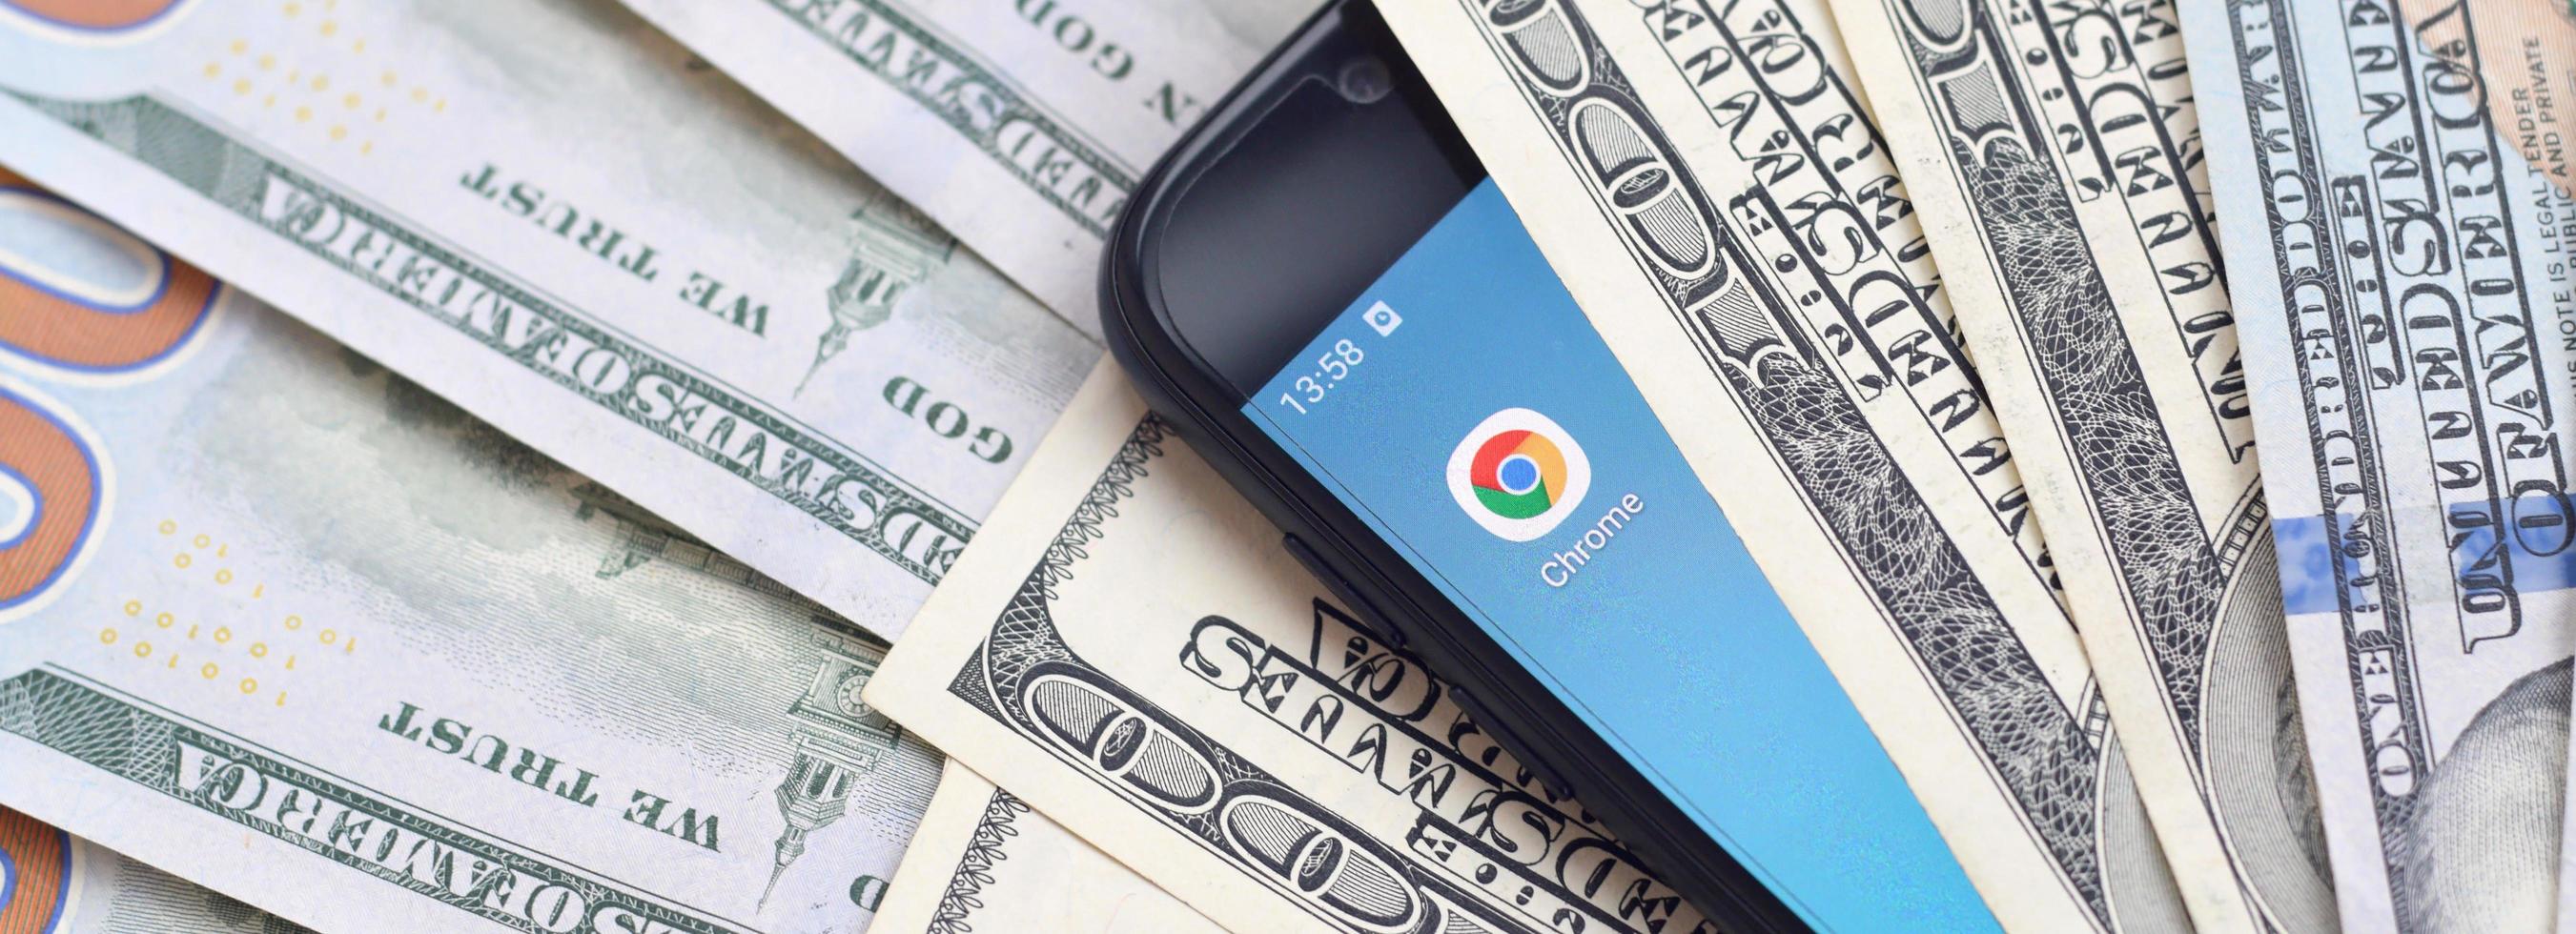 pantalla de teléfono inteligente con la aplicación google chrome y muchos billetes de cien dólares. concepto de negocios y redes sociales foto